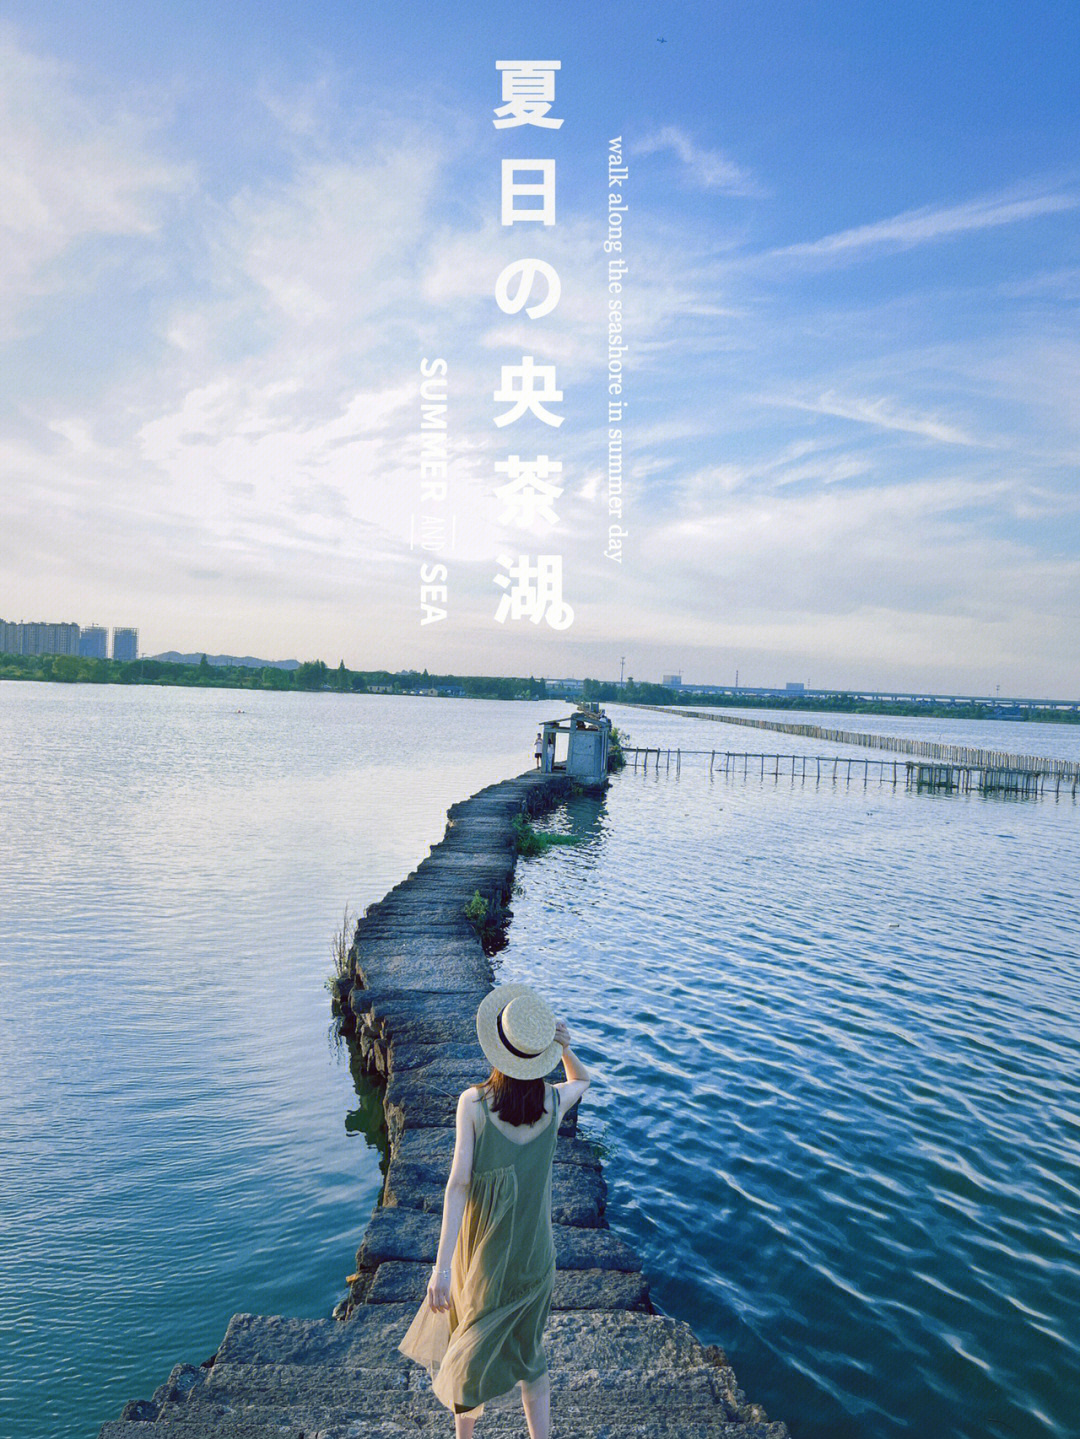 绍兴央茶湖规划开发图片